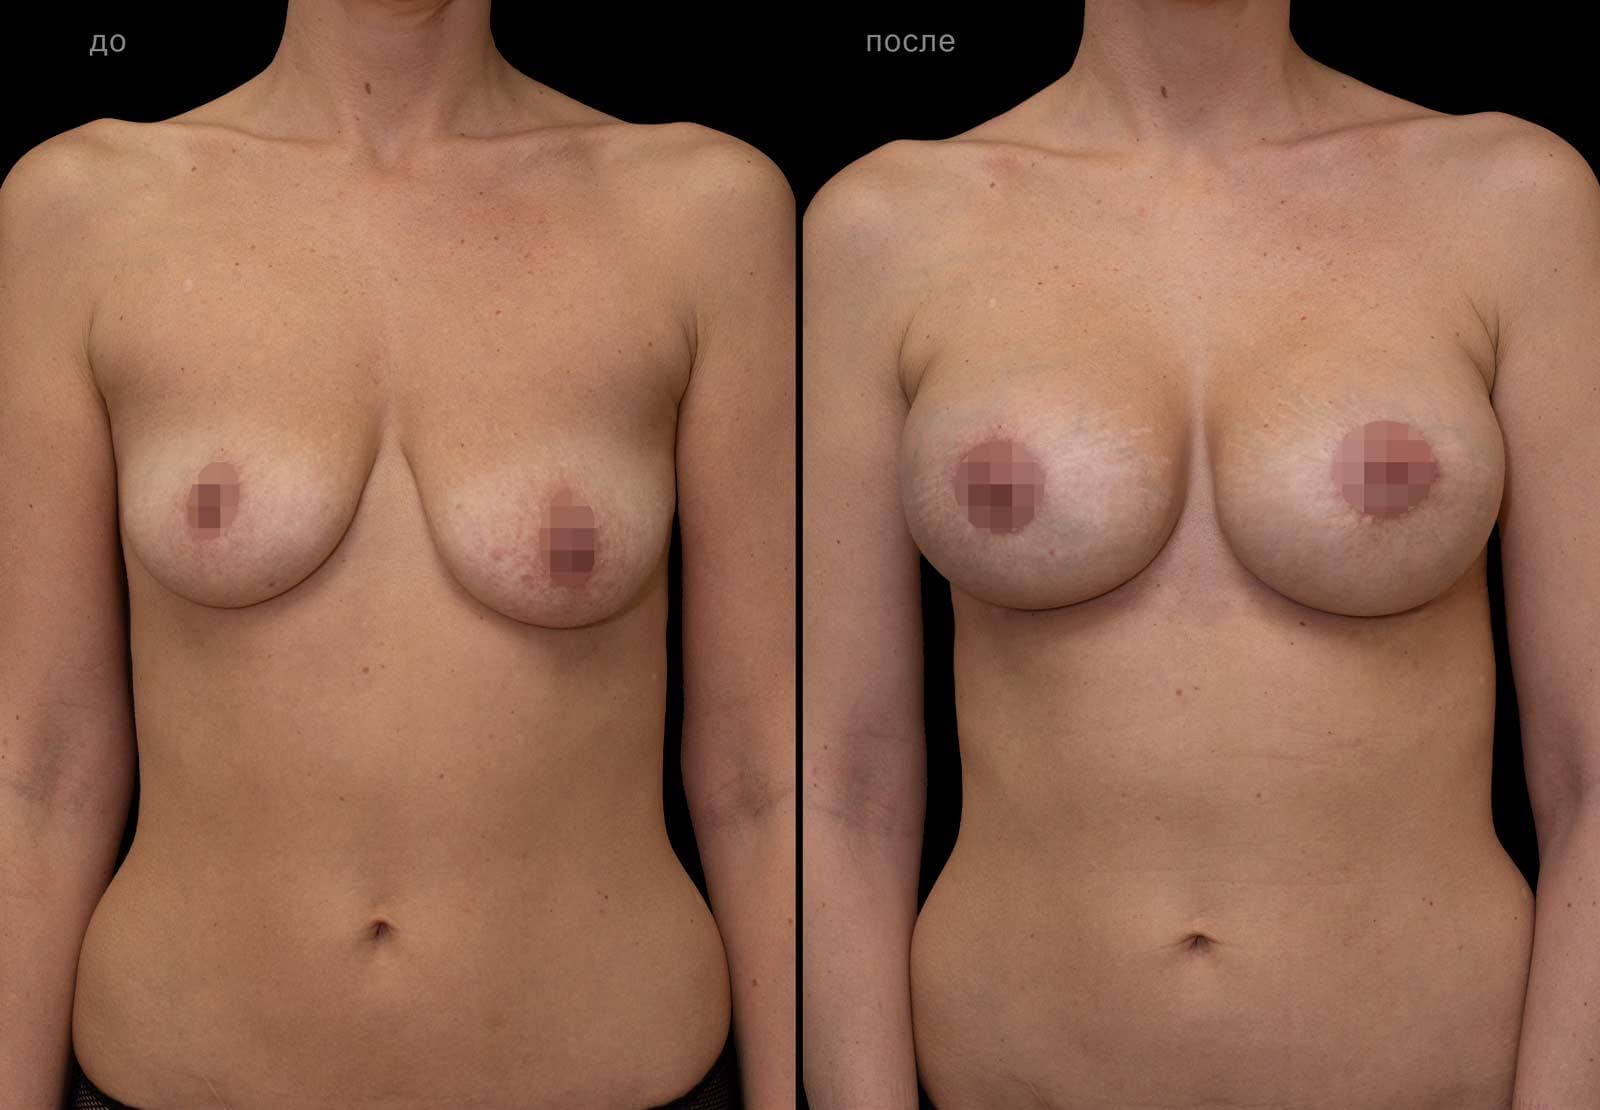 почему у женщин одна грудь меньше фото 110